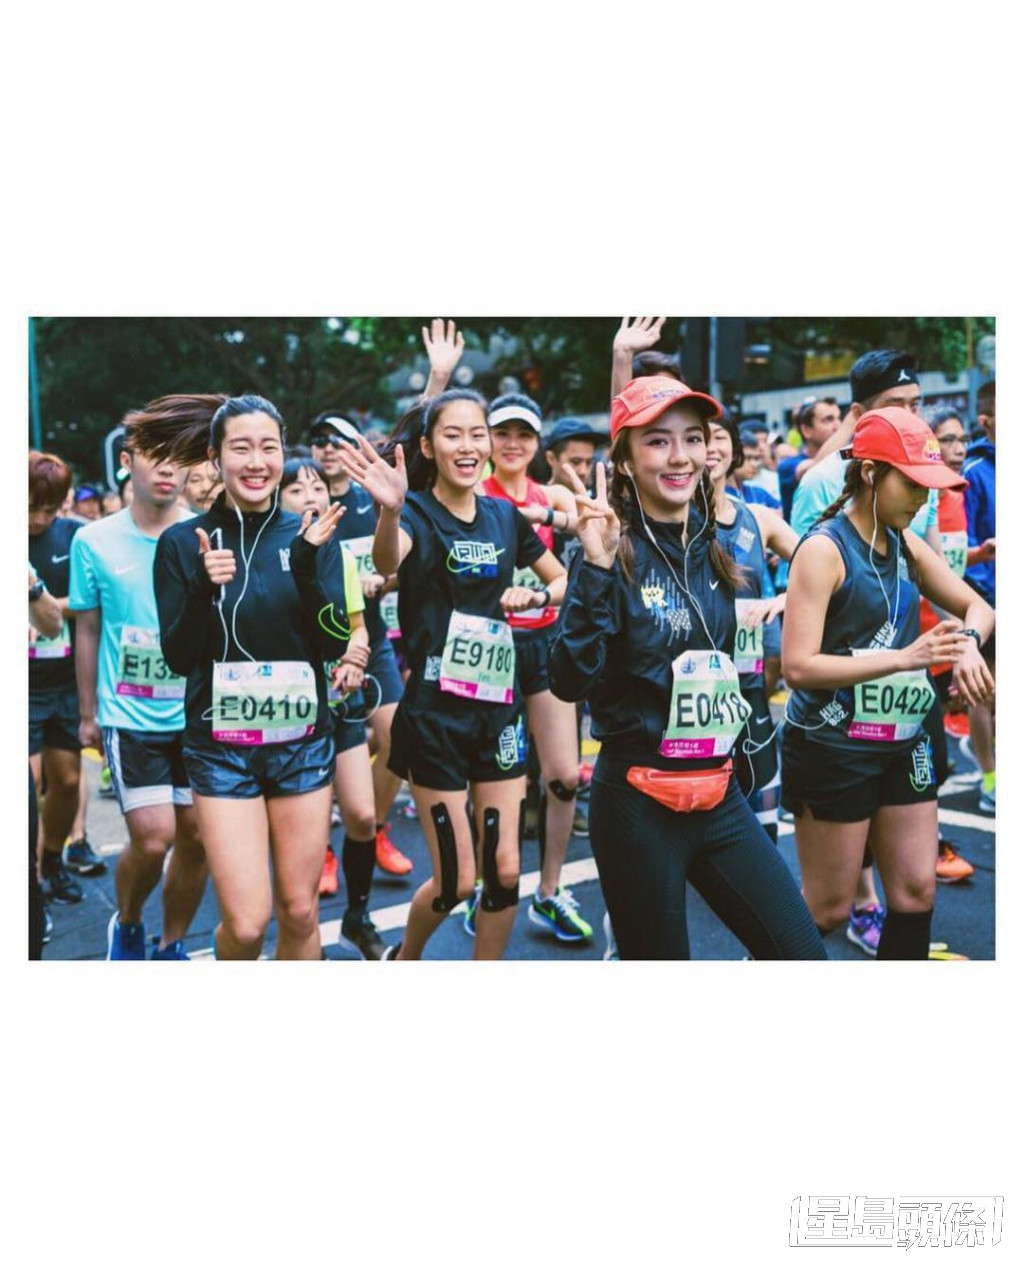 陈星妤2019年曾与林莉莉、李靖筠、杜颖珊、车泳希、王家欣及杨乐欣组成「GenZ」女子跑步团，参加香港马拉松半程赛事。